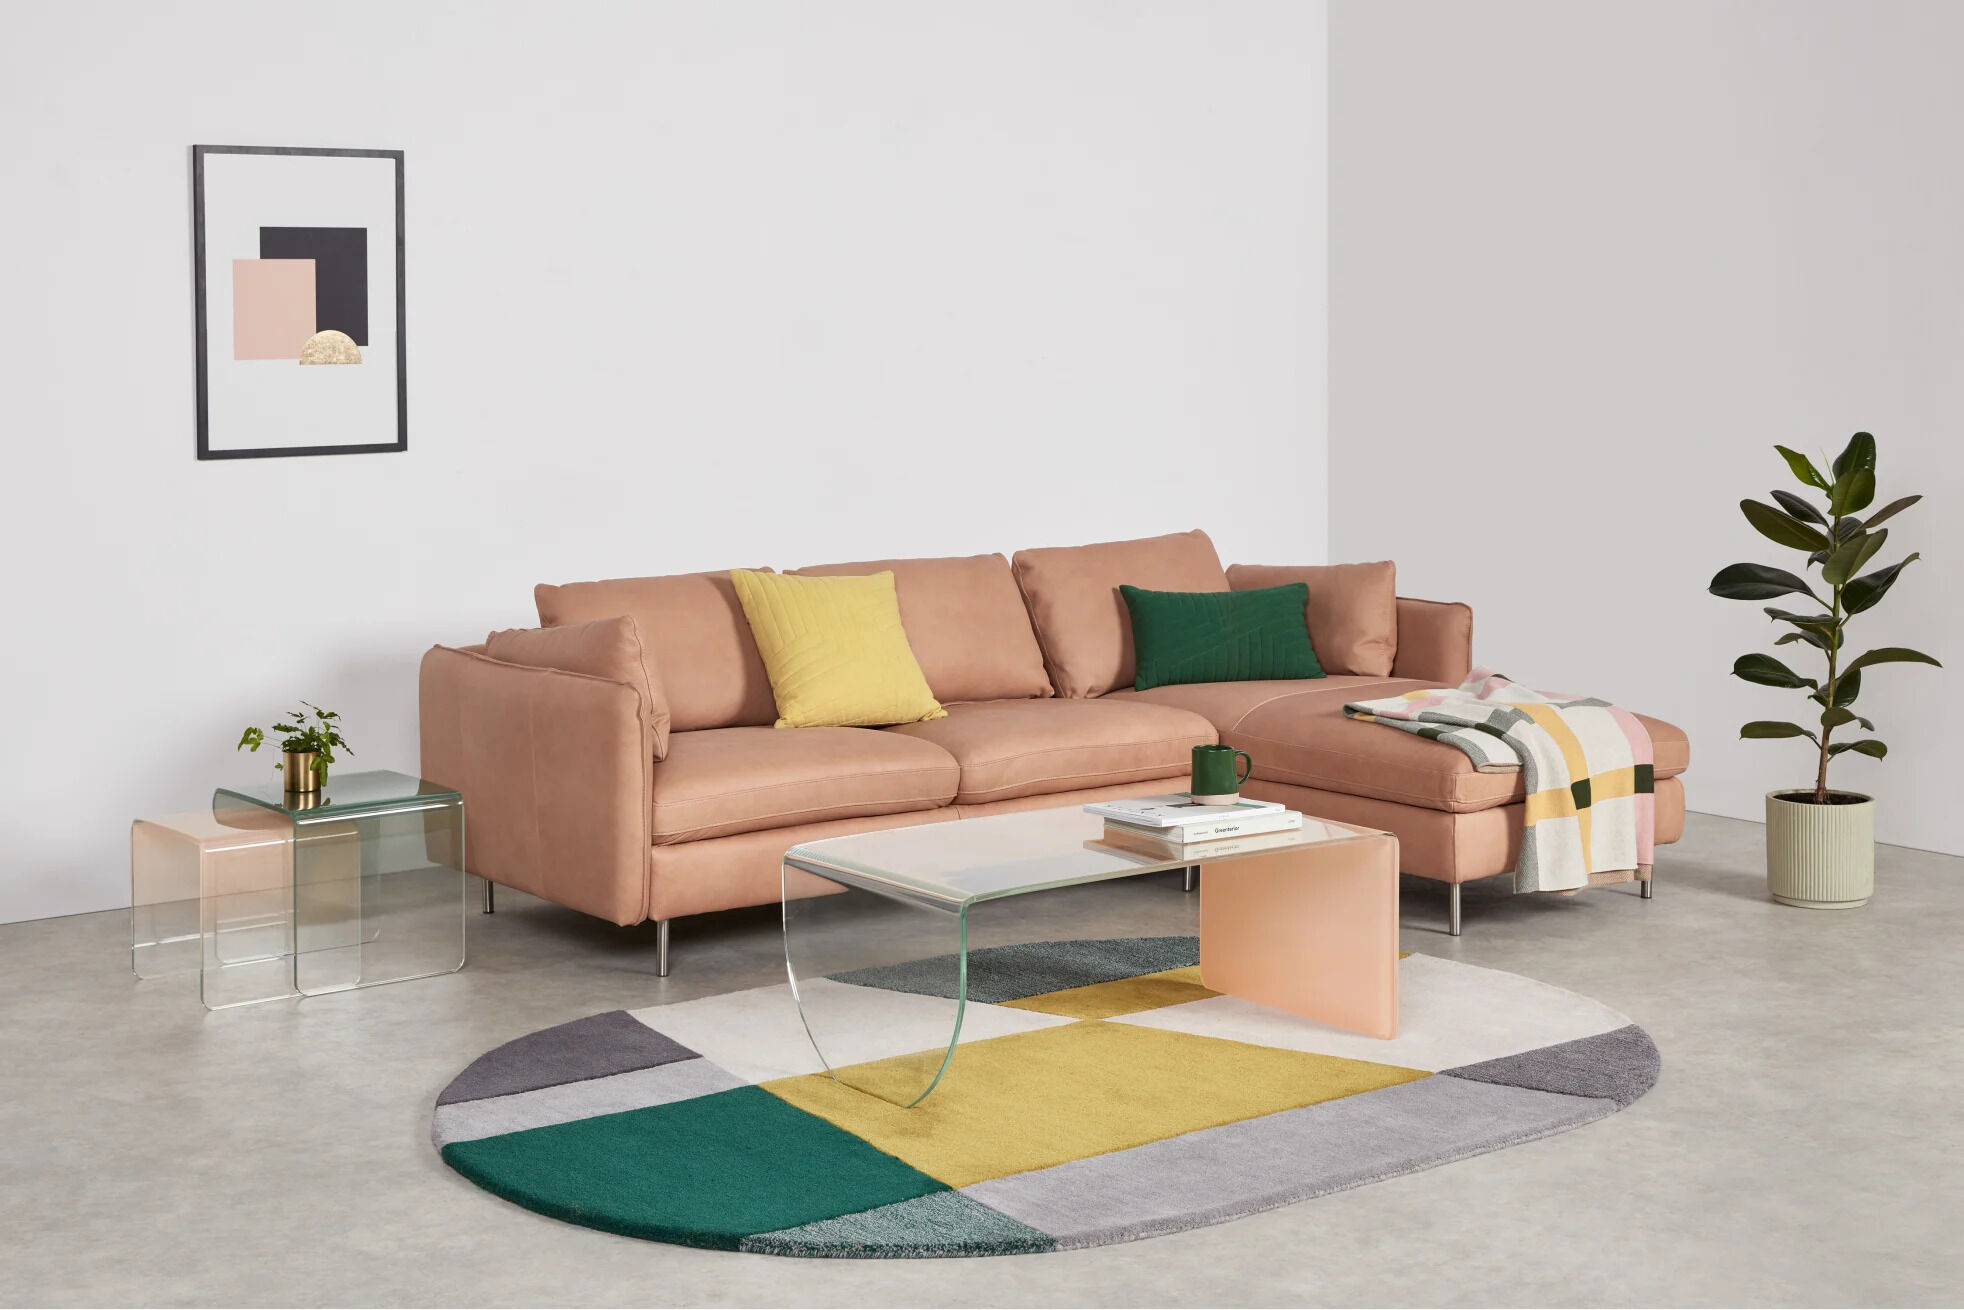 jacht Hassy Startpunt Dit zijn onze 7 favoriete meubels en accessoires van MADE.com - Trendalert